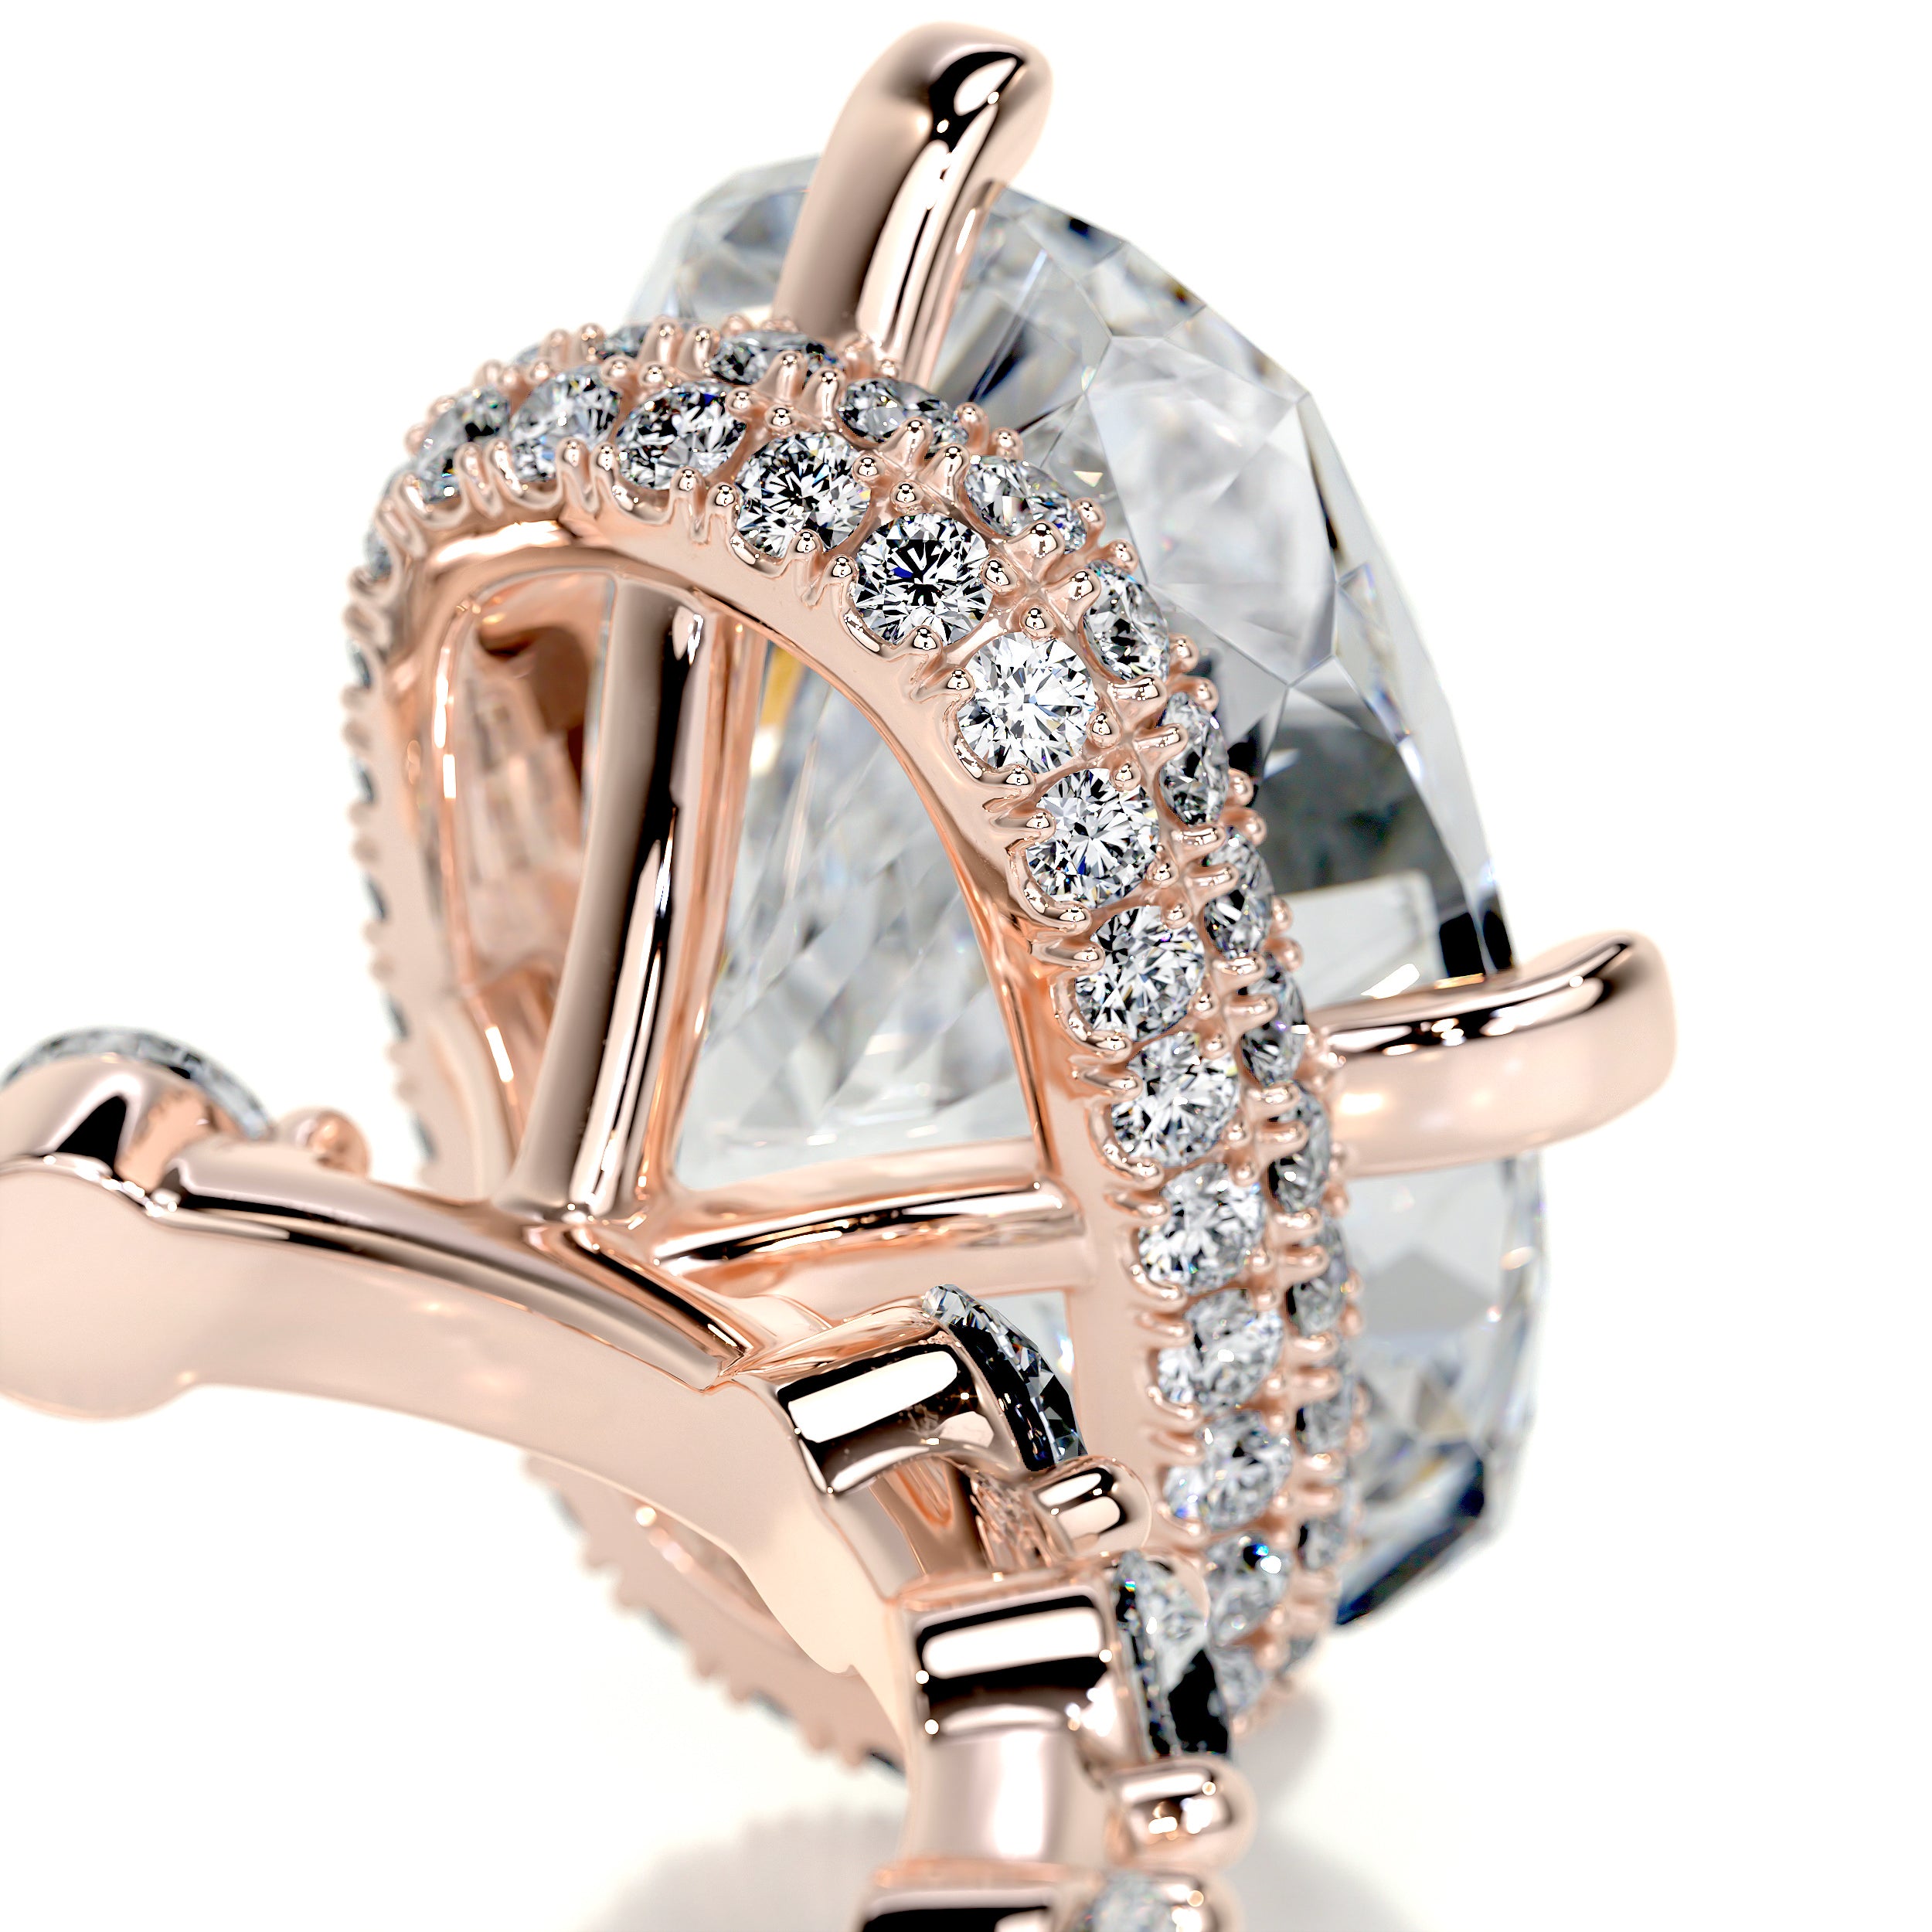 Theresa Moissanite & Diamonds Ring -14K Rose Gold